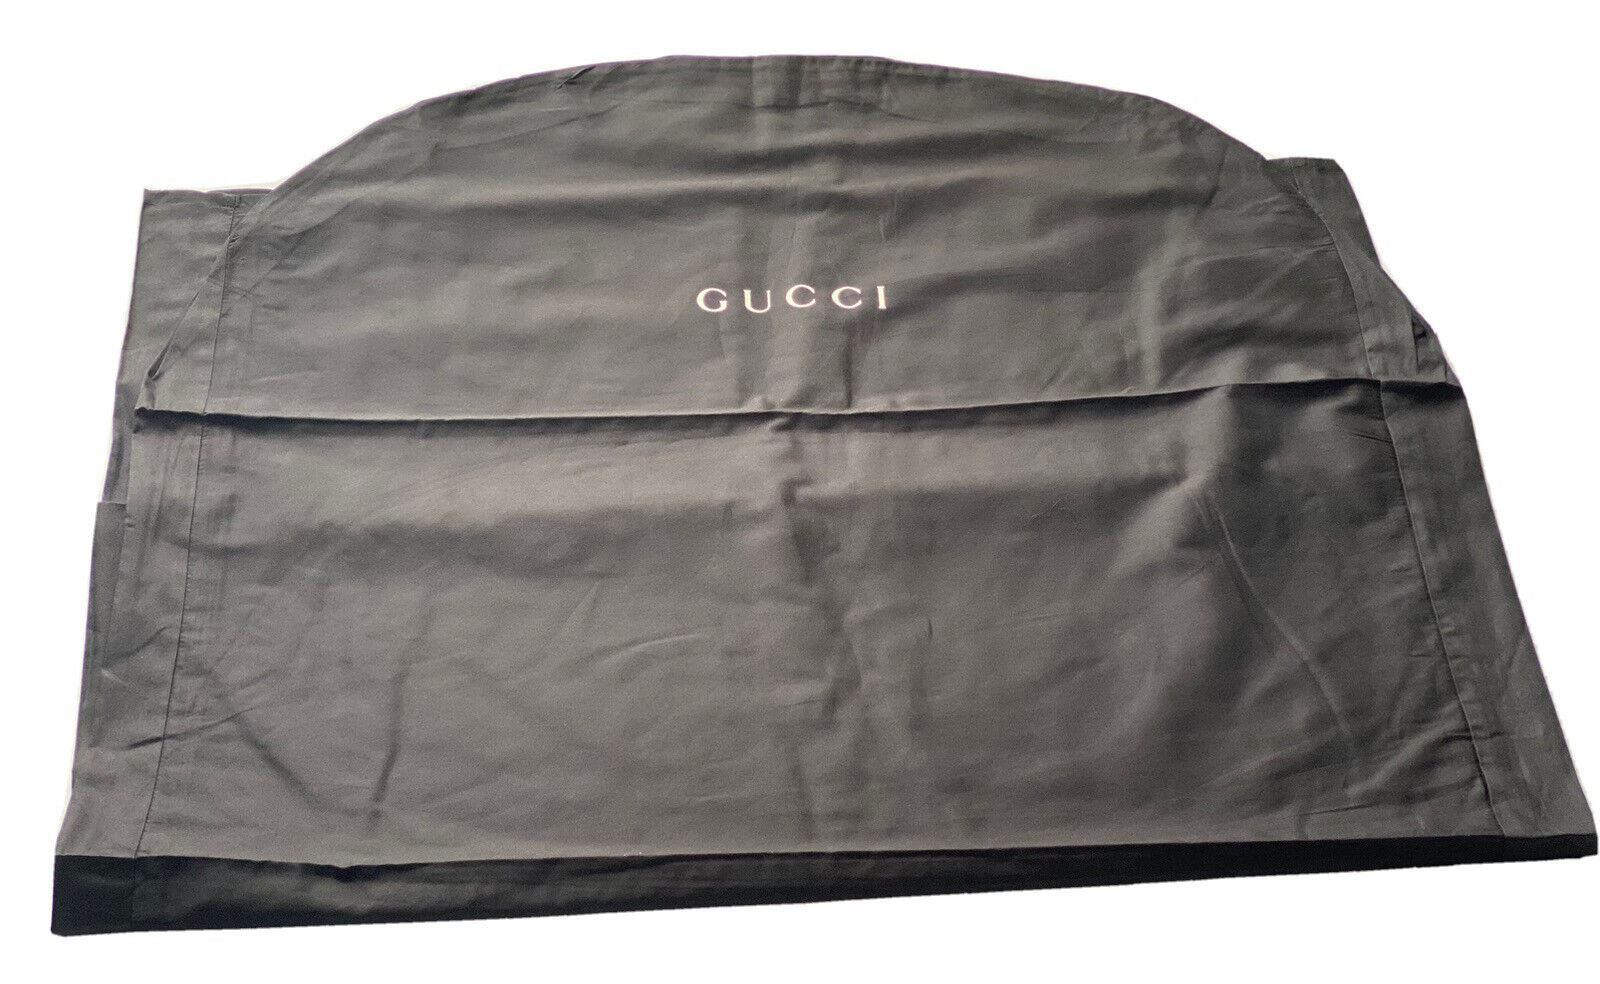 Neuer Gucci-Kleidersack aus Baumwolle für Mantel/Suite/Kleid, Schwarz, 54,5" L x 33,5" B 